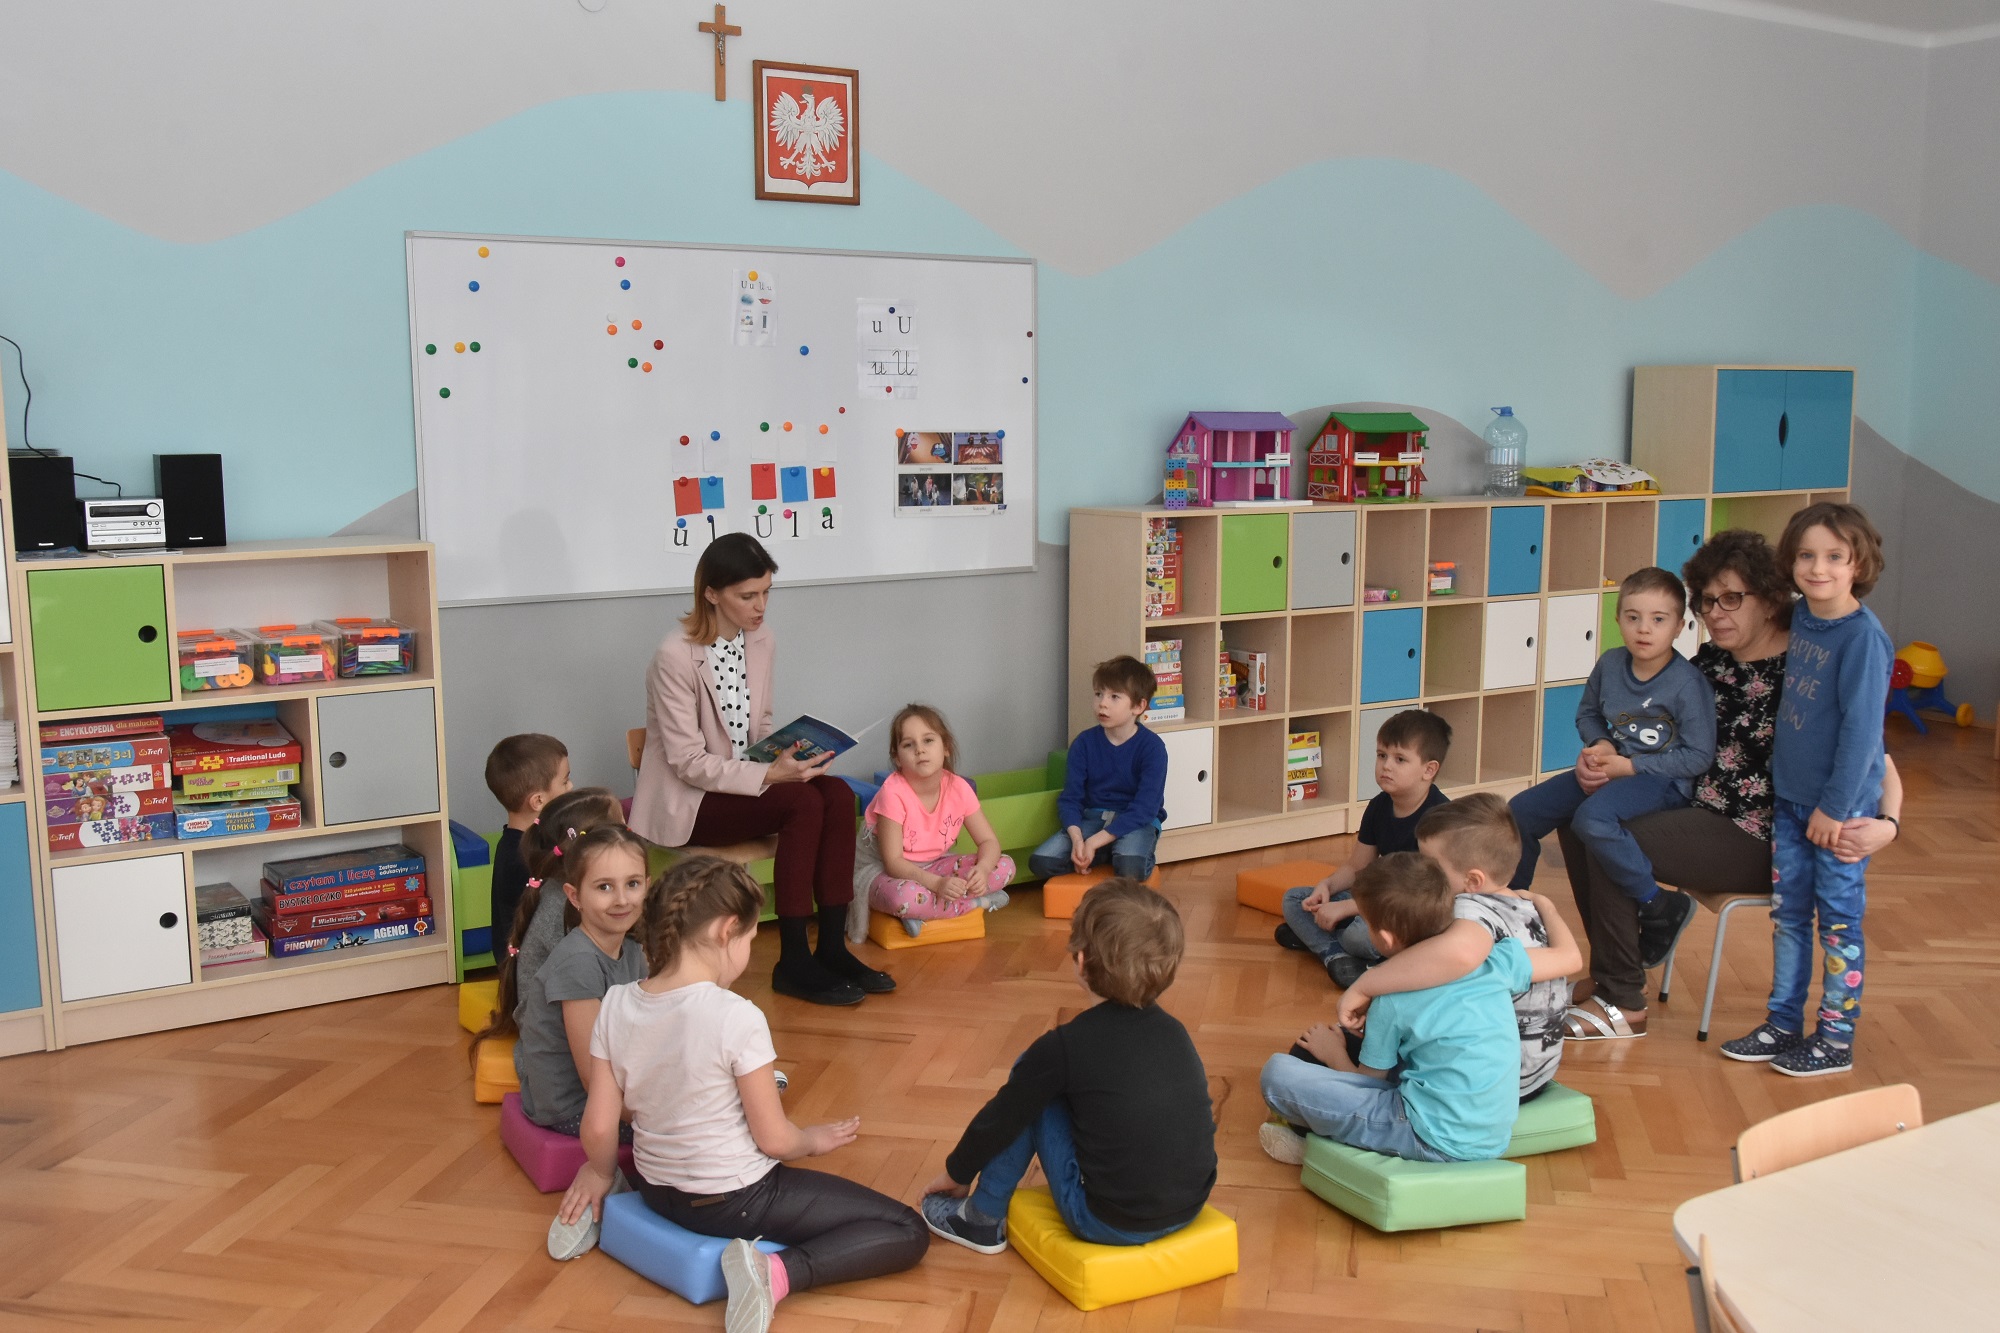 Dzieci w sali zajęć siedzą na podłodze i słuchają nauczycielki która czyta książkę.